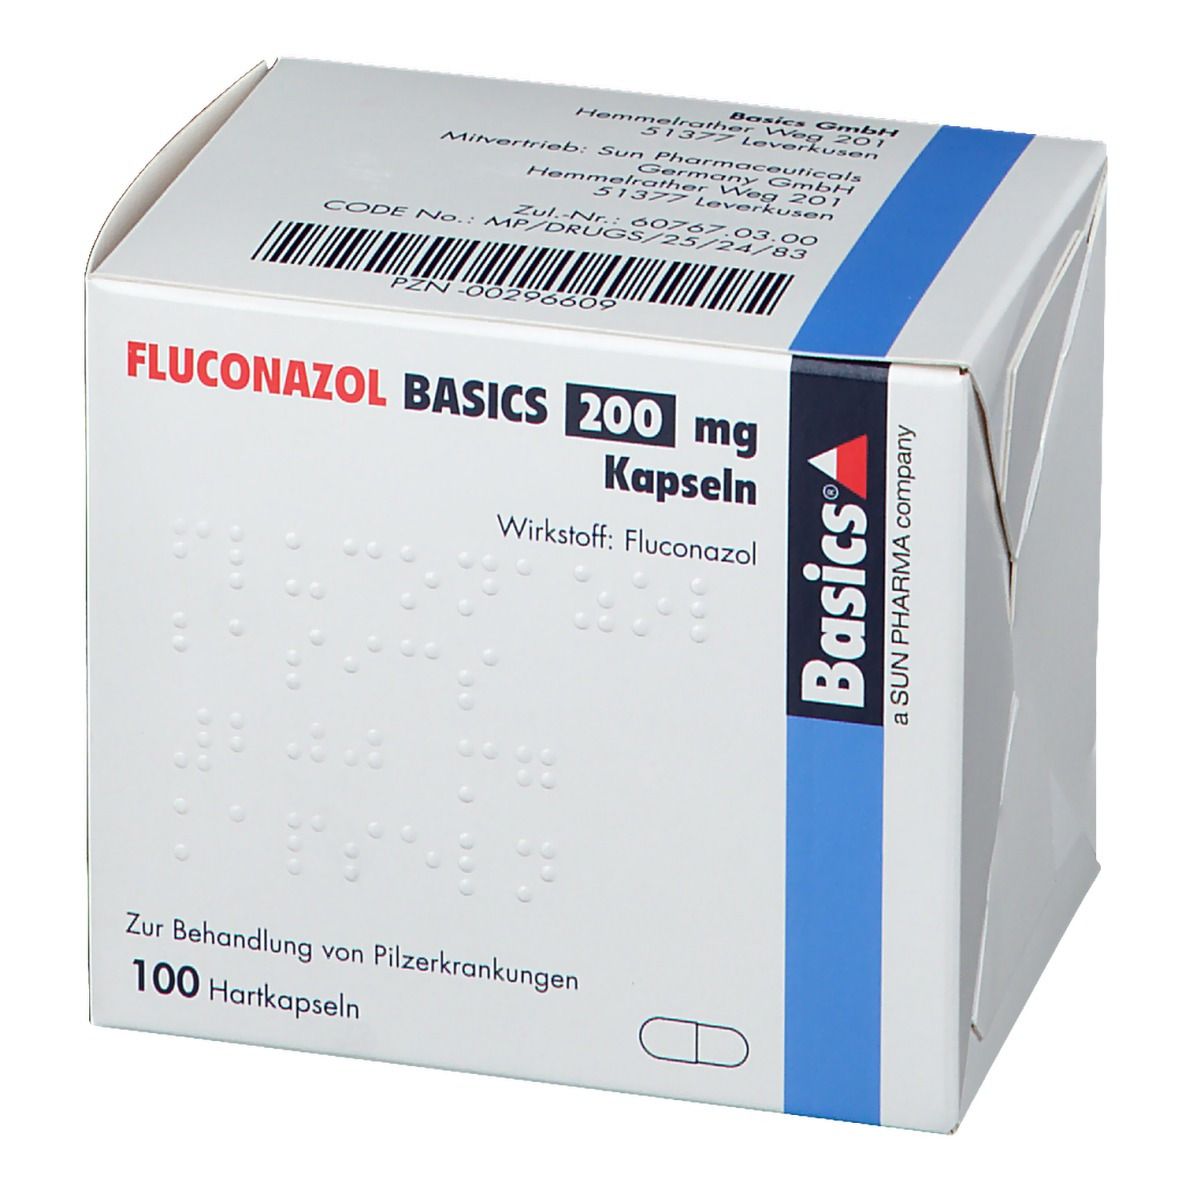 FLUCONAZOL BASICS 200 mg